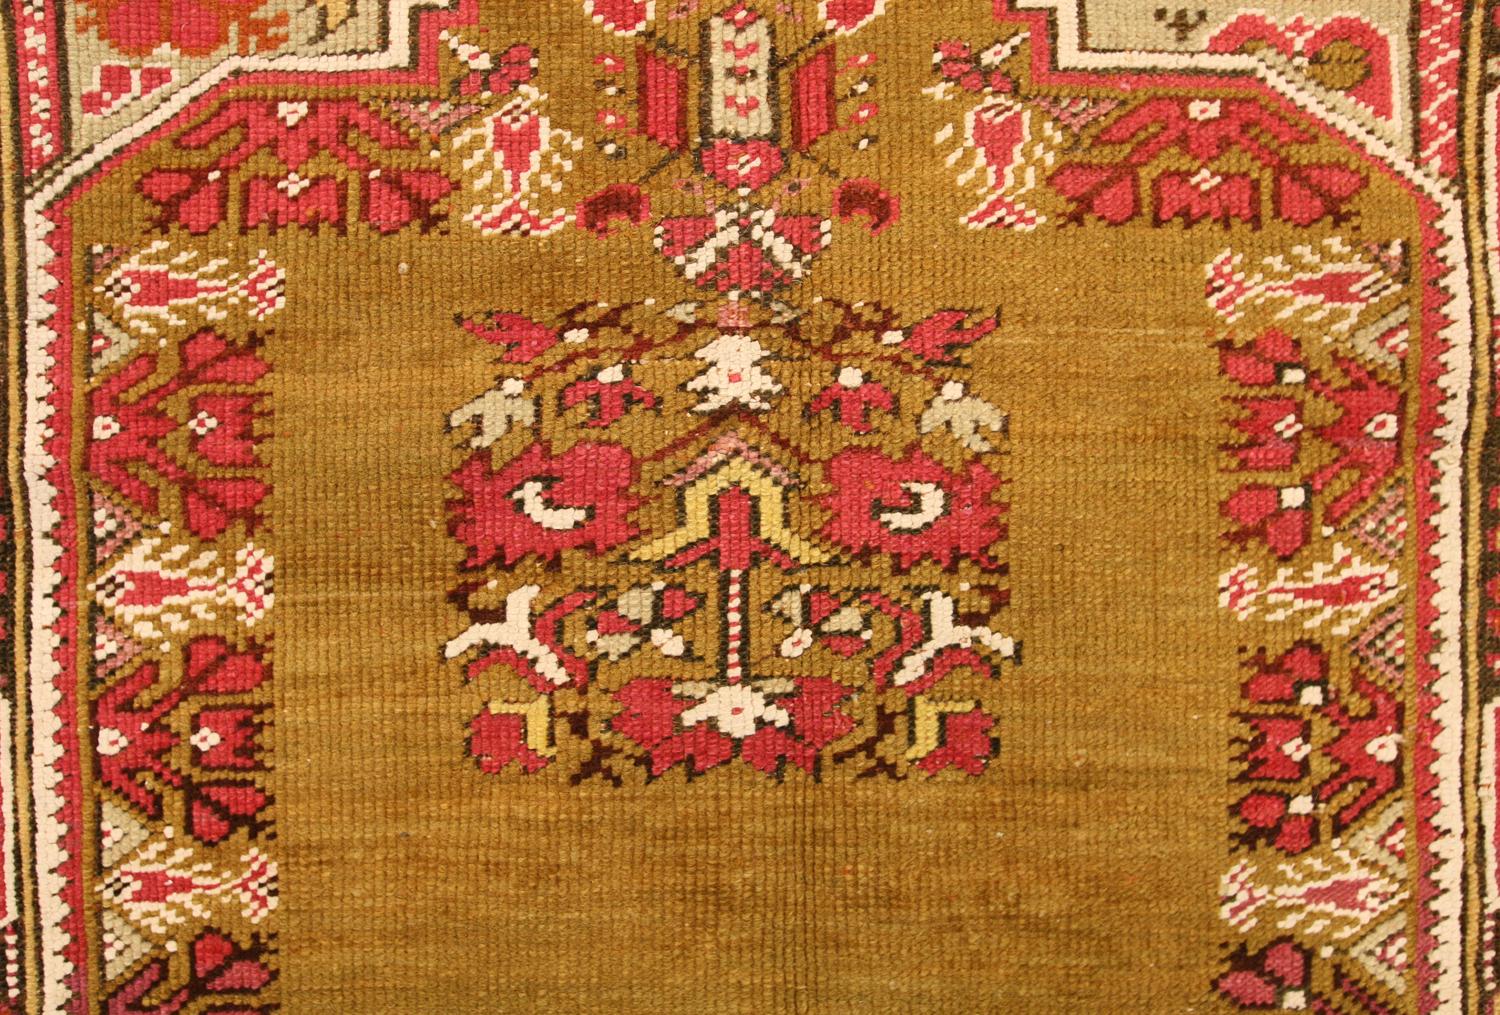 Ein luxuriöser und attraktiver Ghiordes-Teppich mit fantastischem, stilisiertem Motiv. Die herausragenden Merkmale der Ghiordes-Teppiche (auch Giordes genannt) sind die eckigen Gebetsnischen, die hochdekorativen Zwickel, die architektonischen Säulen